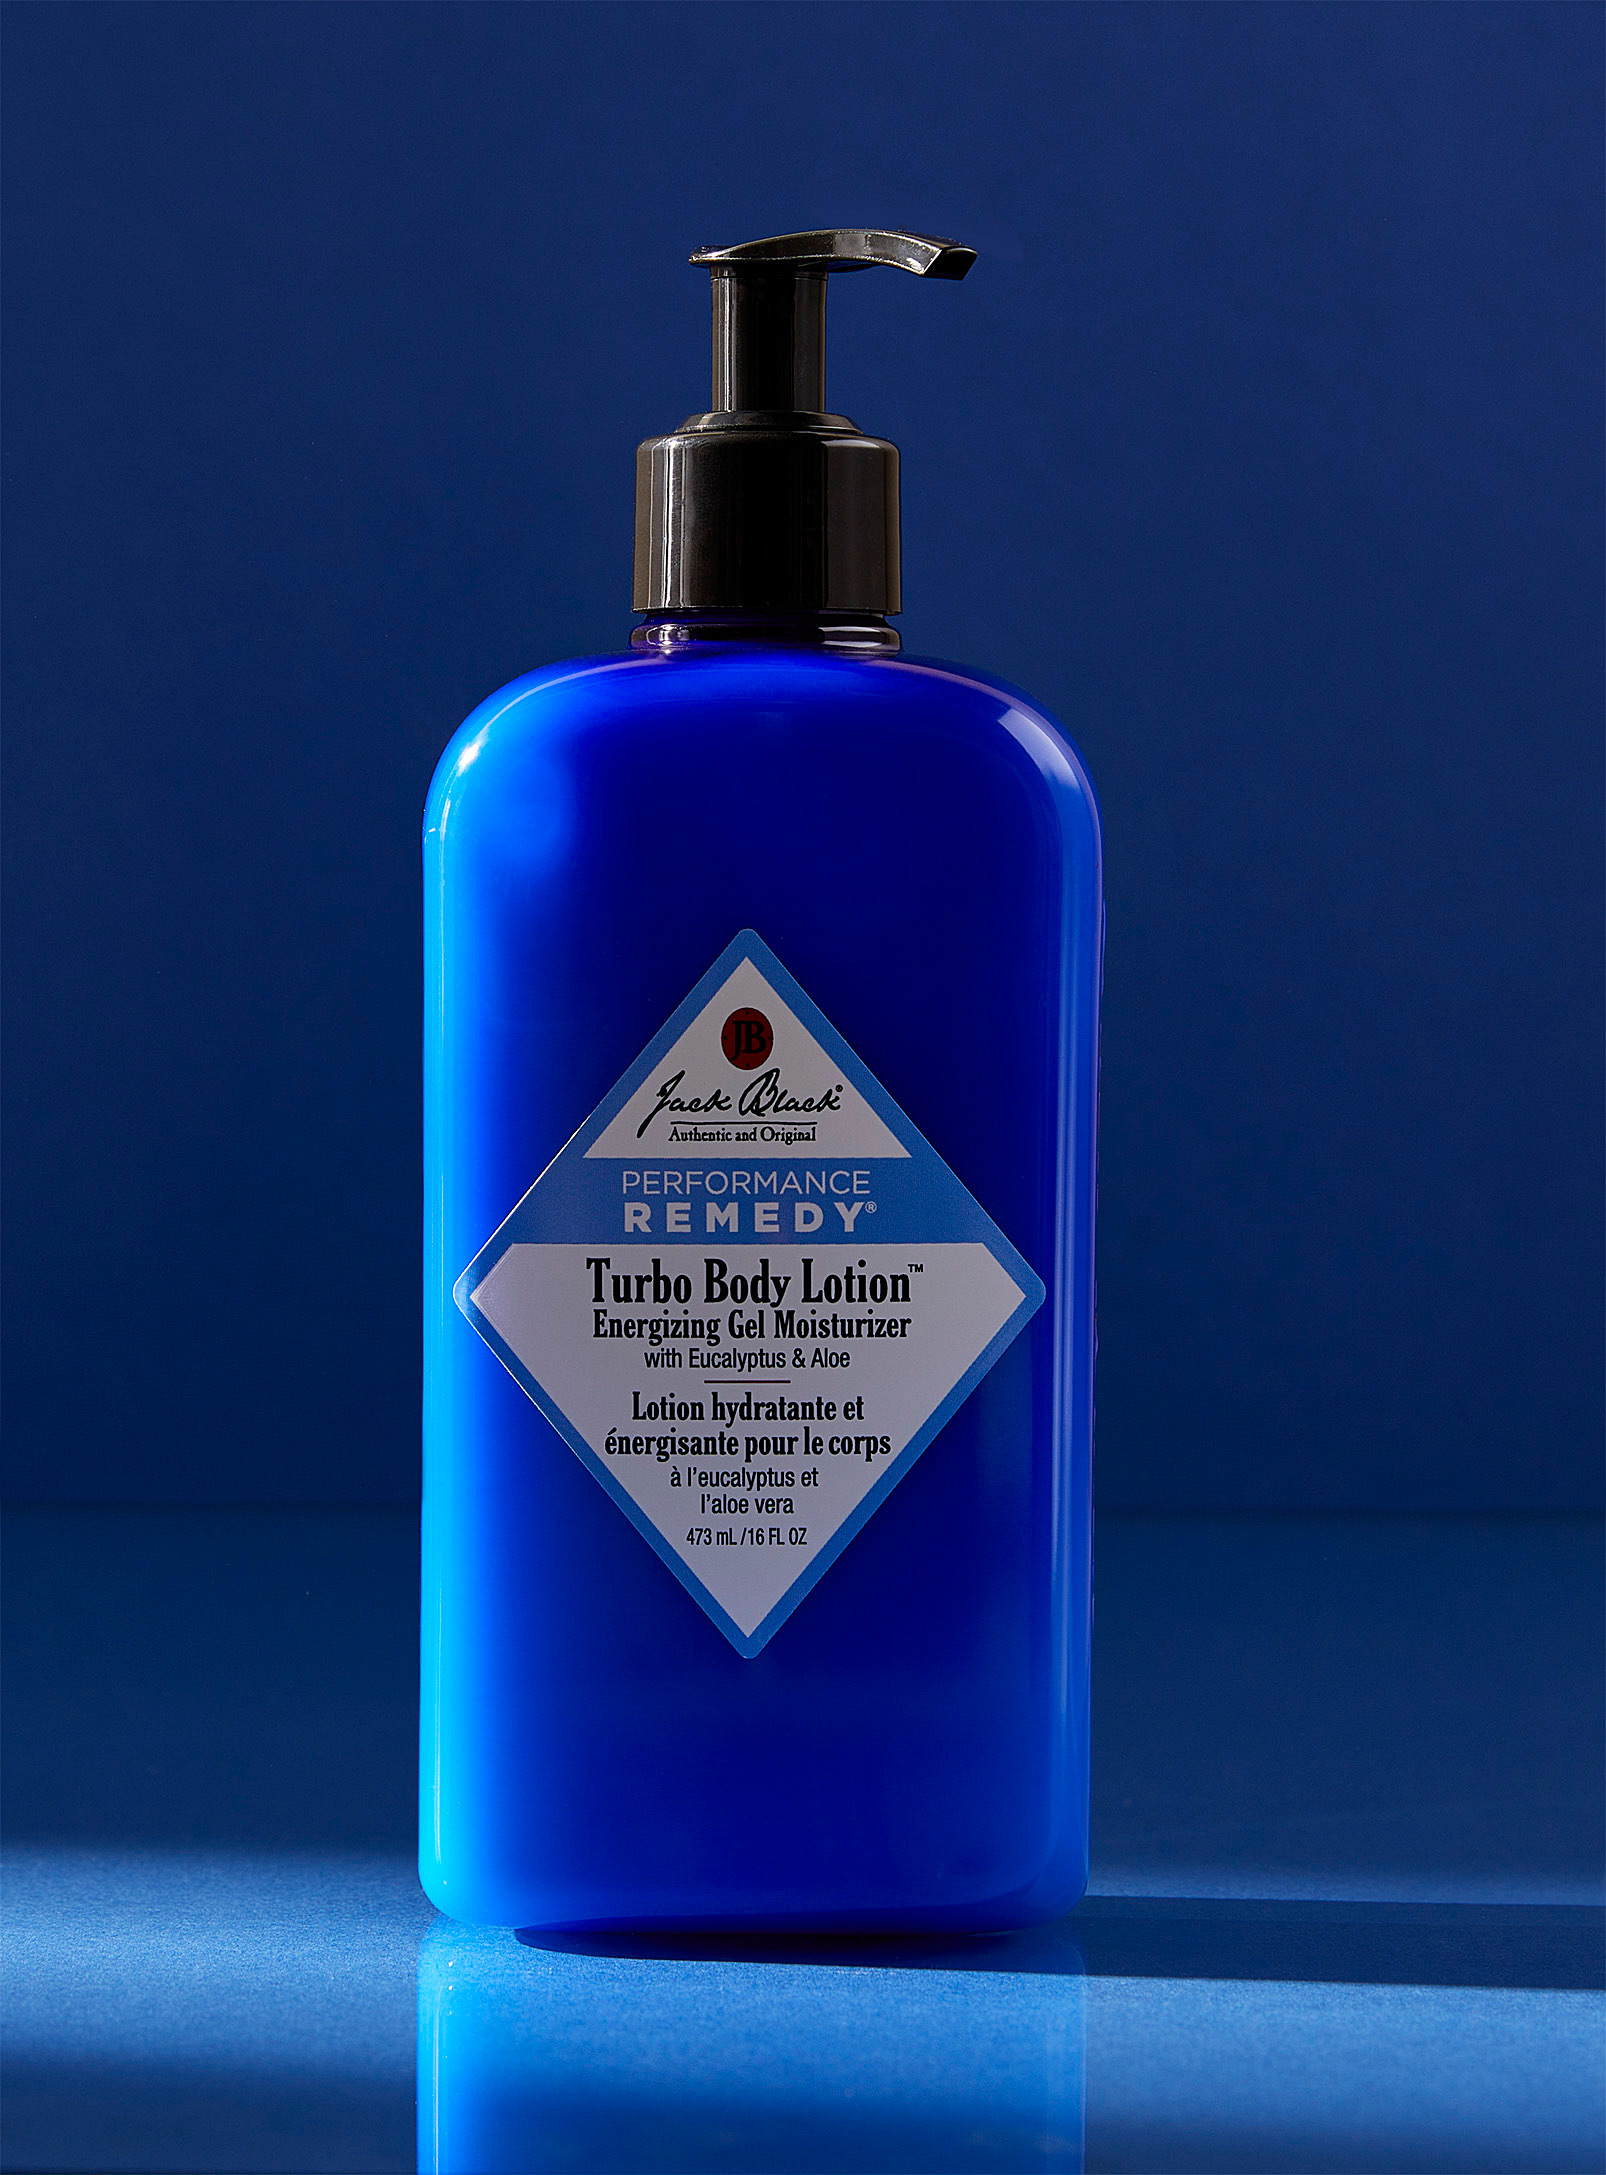 Jack Black - La lotion hydratante et énergisante pour le corps